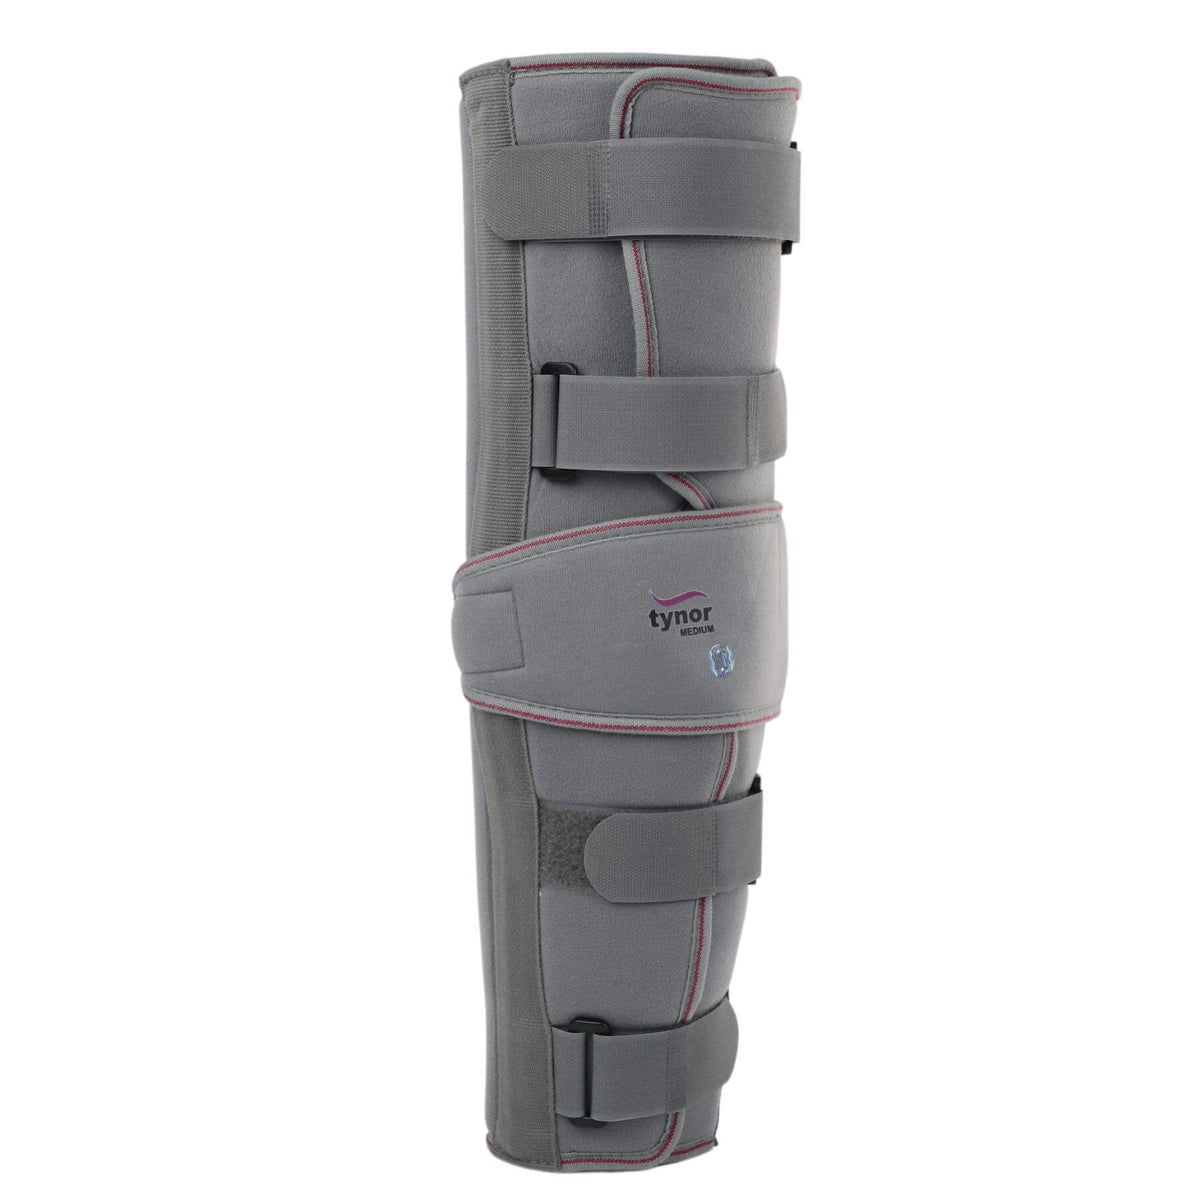 Premium Knee Immobiliser 48cm long to immobilise the knee or leg-5